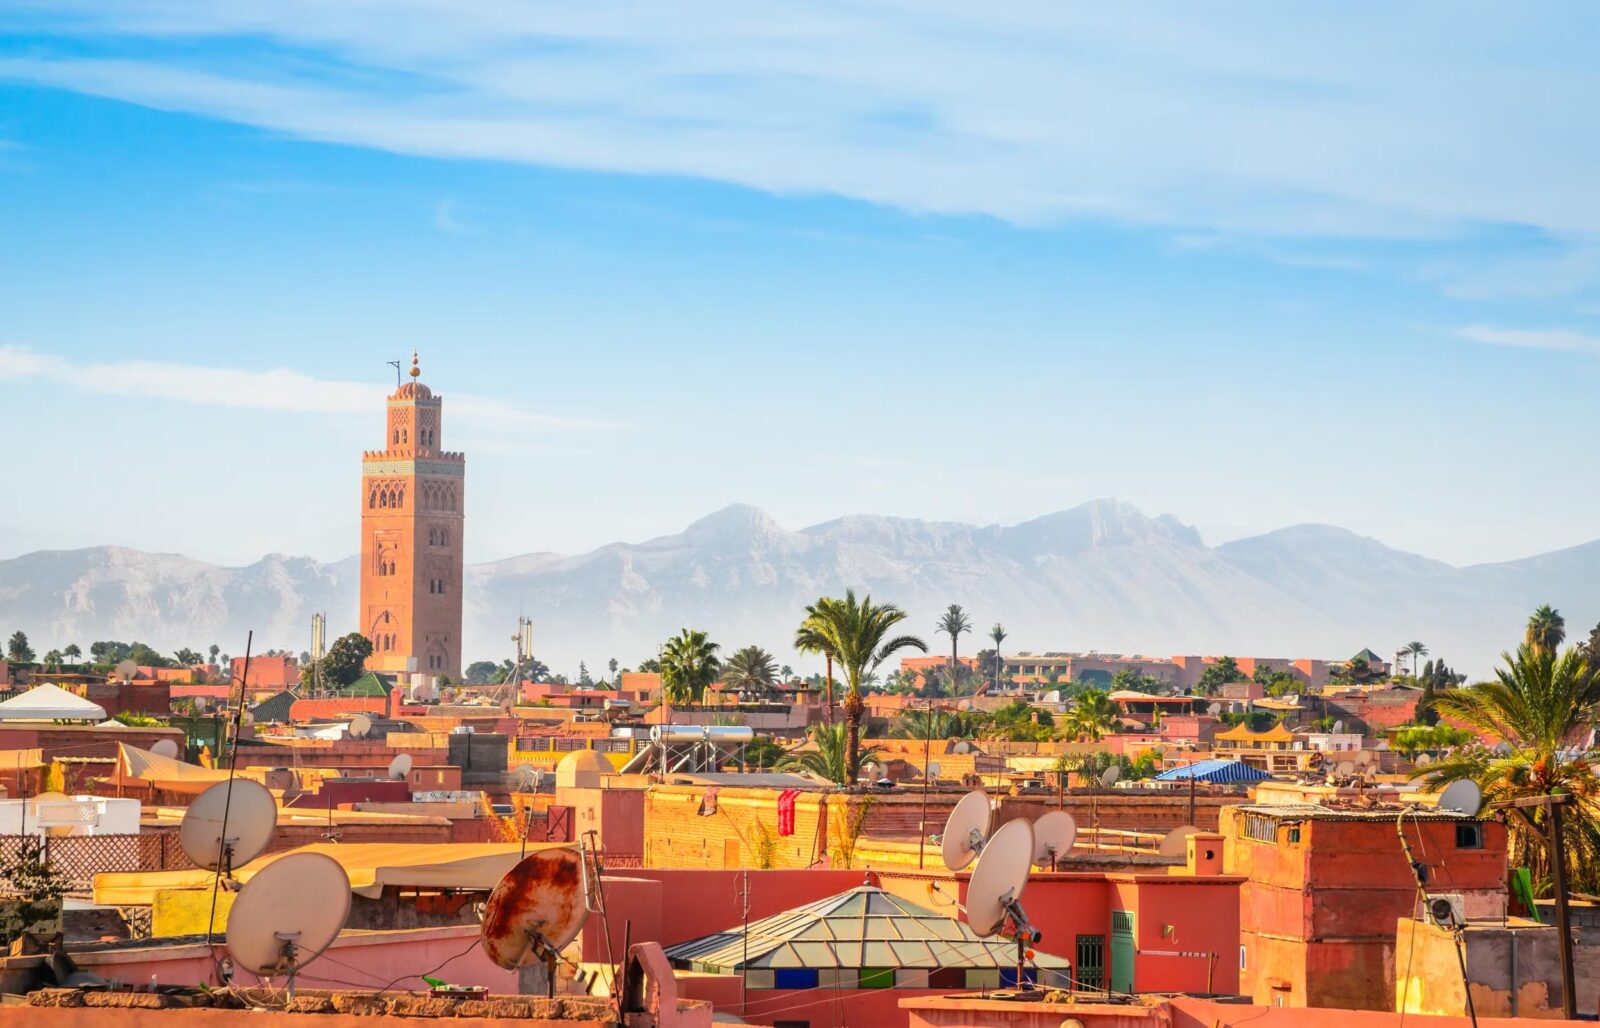 Marrakesh or Marrakech, Morocco